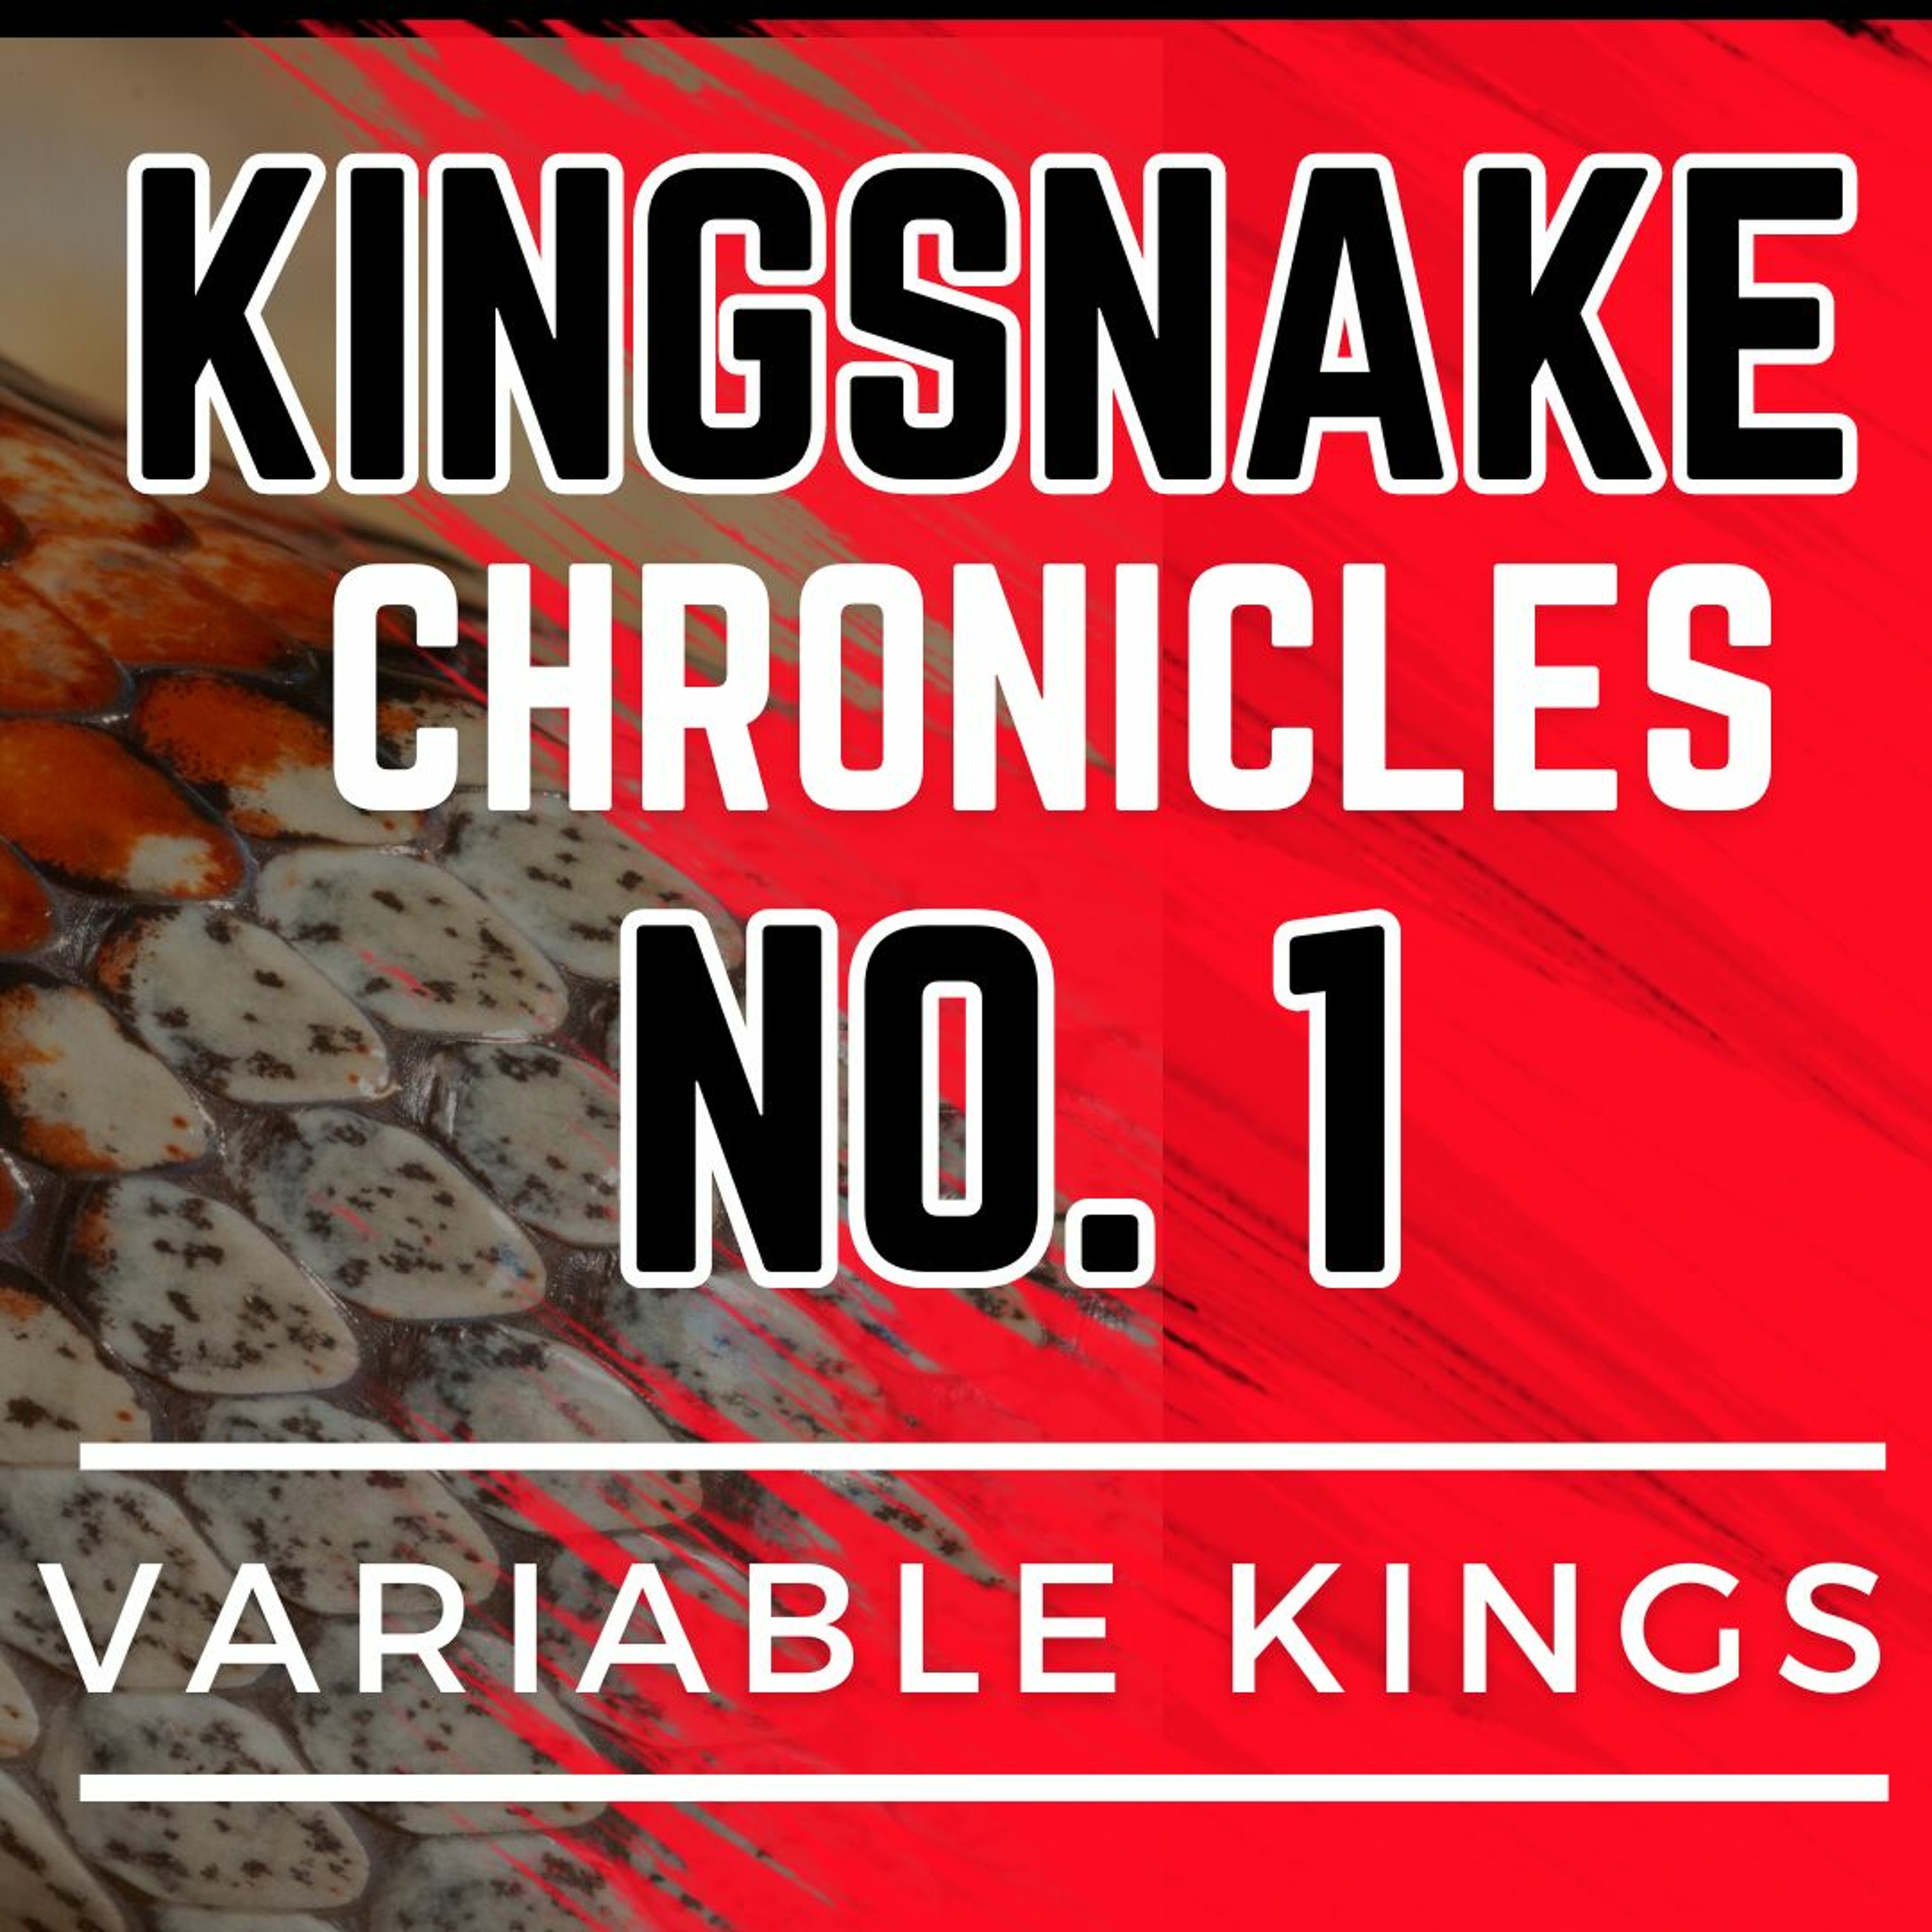 Kingsnake Chronicles  #1 - Leonis with John Lassiter